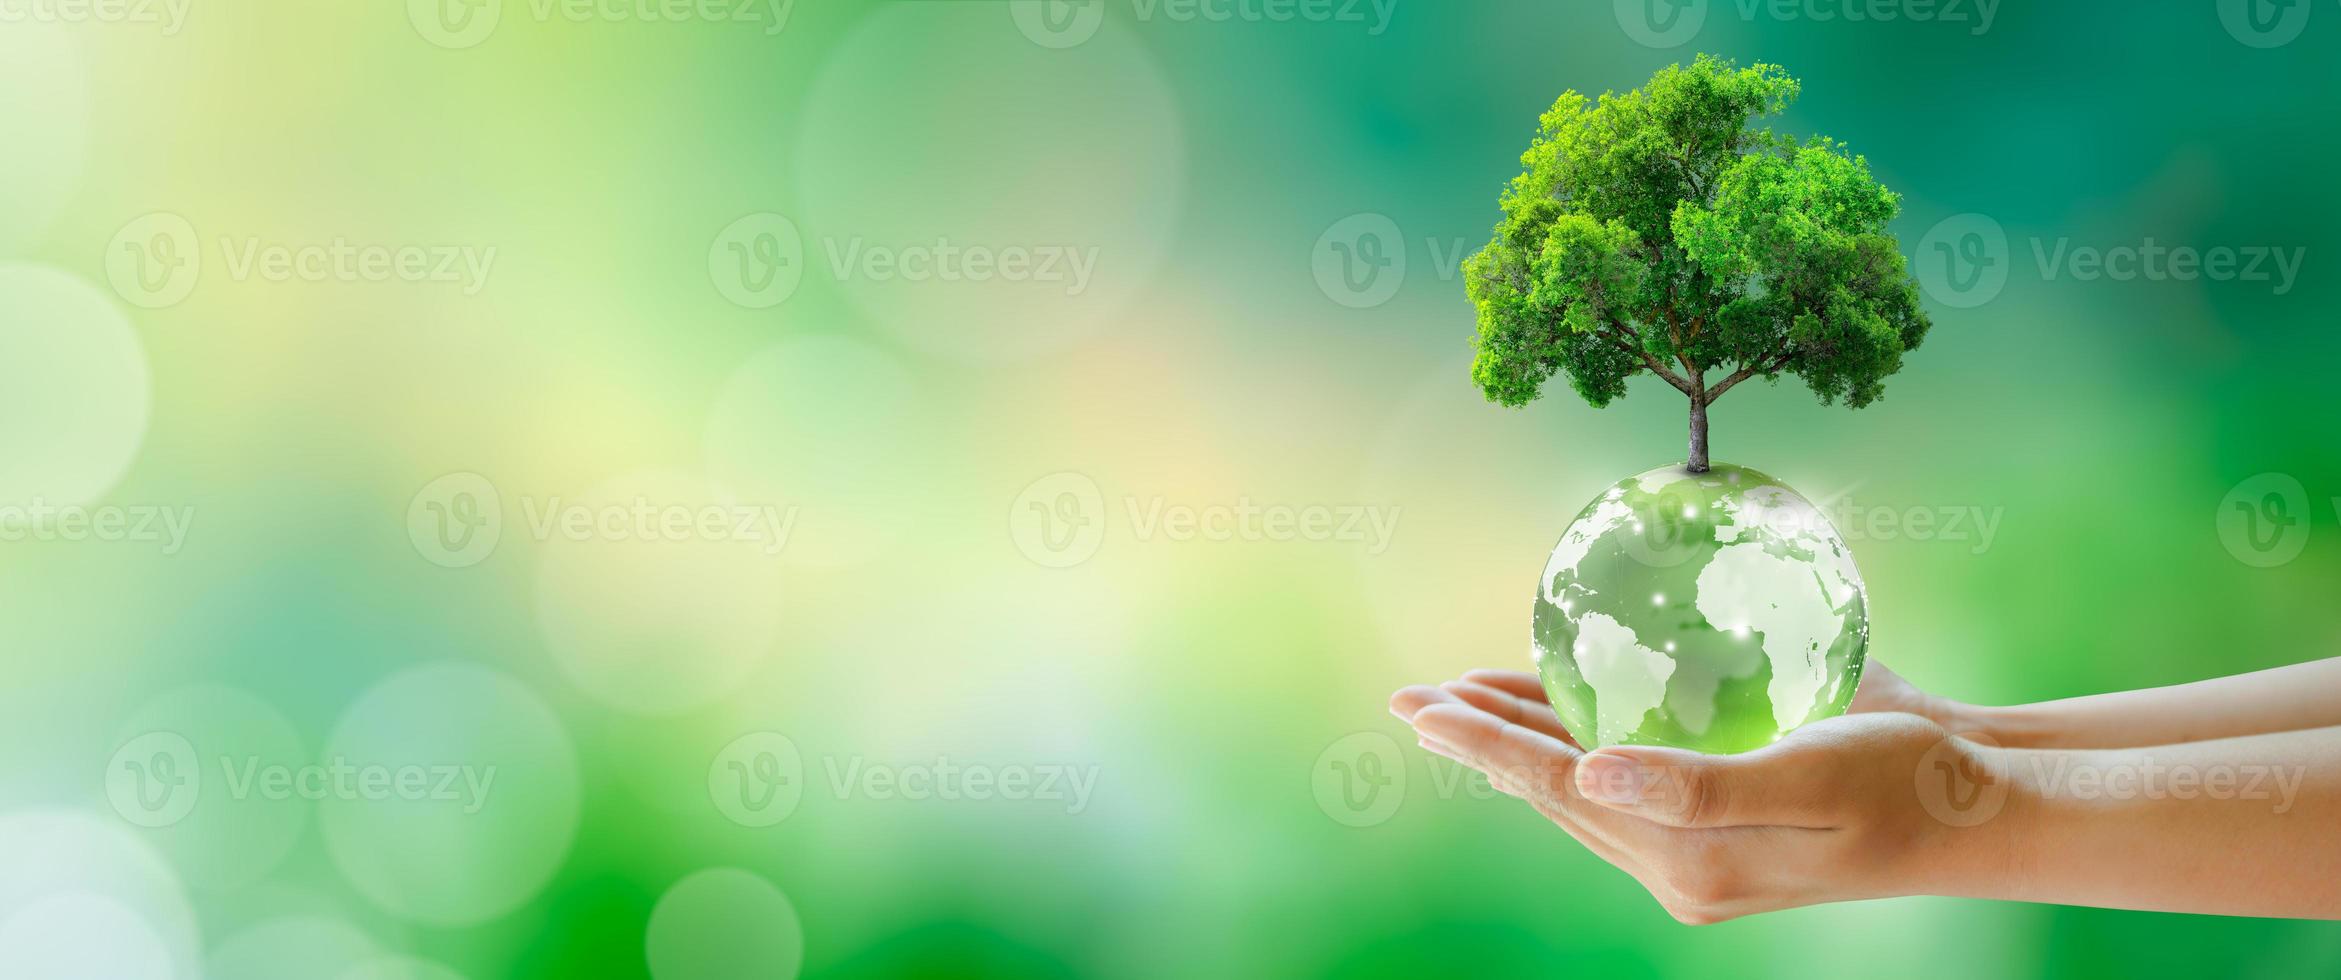 wereld geestelijke gezondheid en wereld aarde dag. milieu en ecologie concept redden. foto